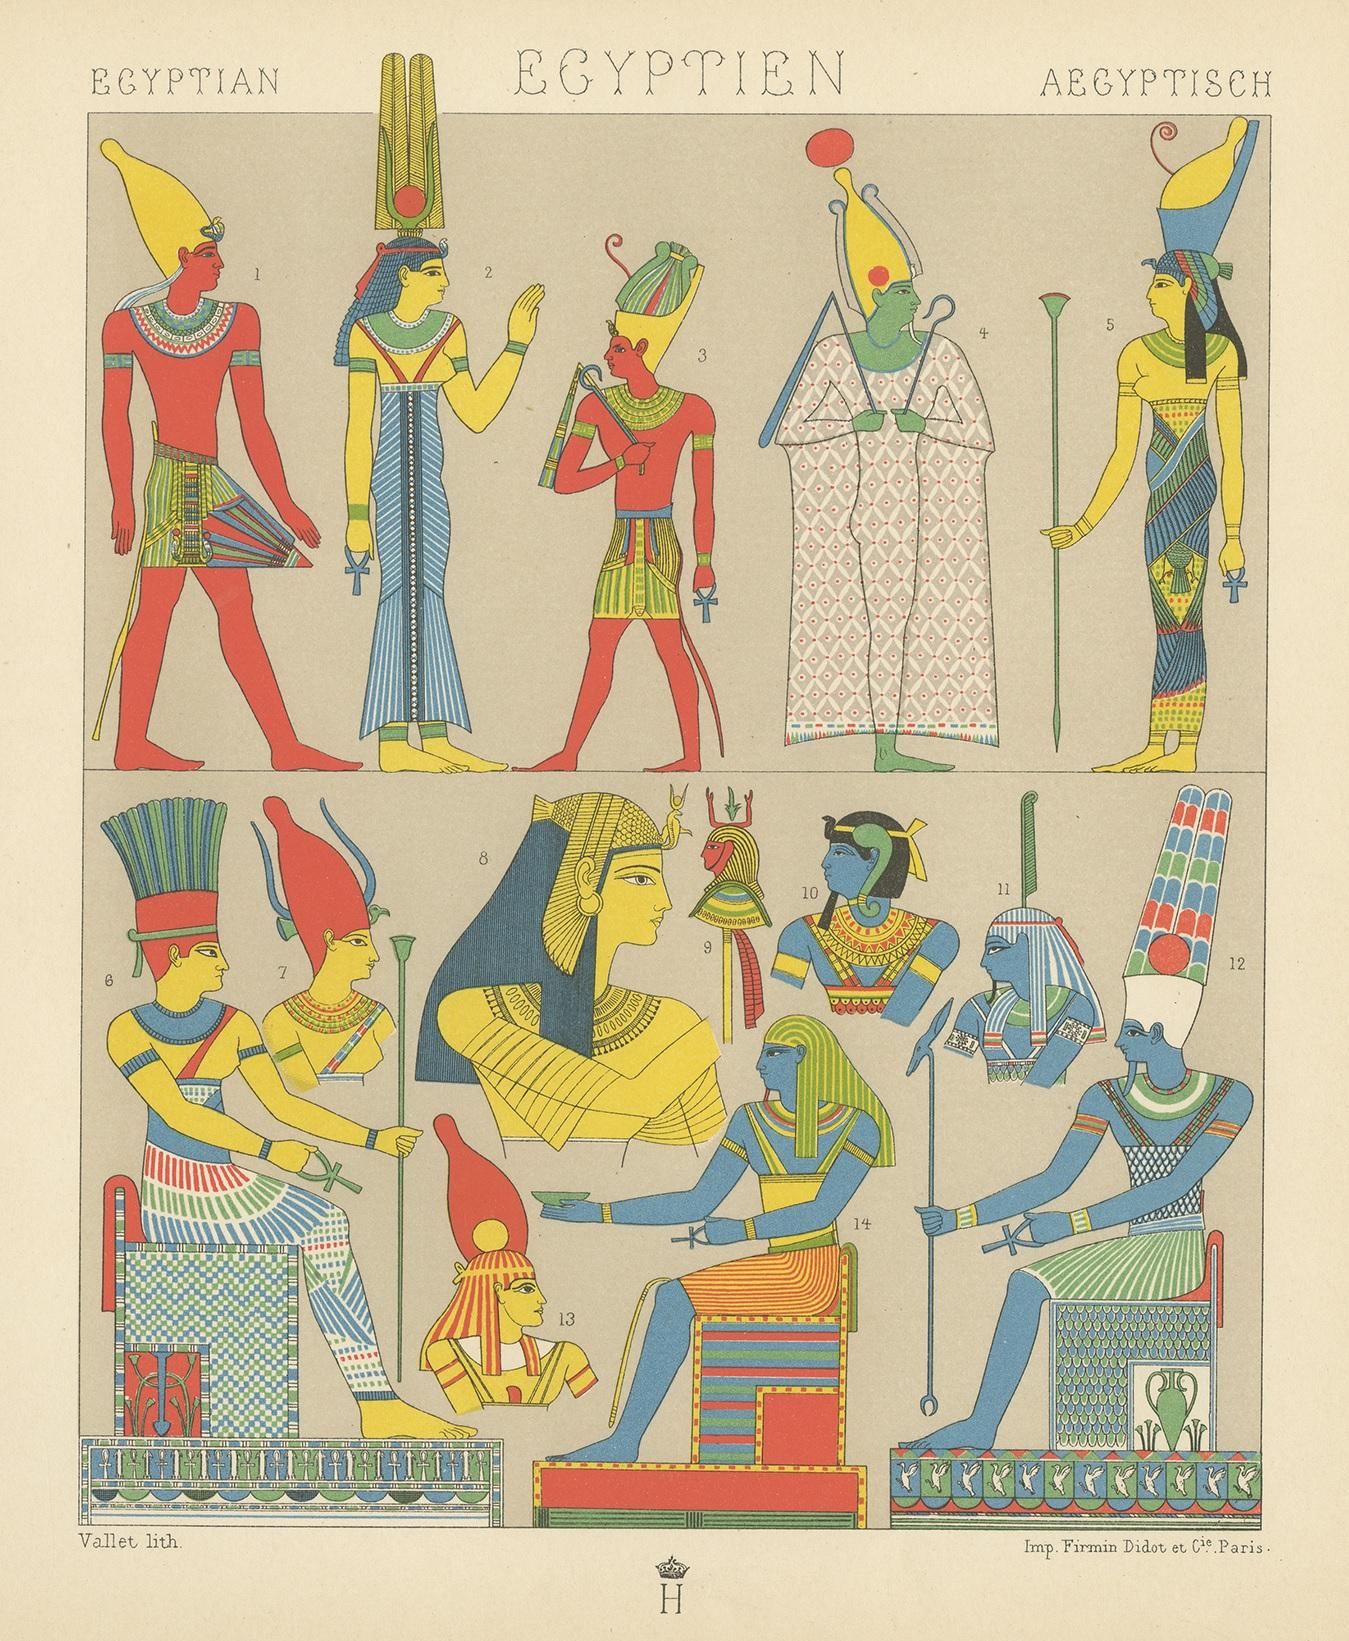 Antiker Druck mit dem Titel 'Egyptian - Egyptien - Aegyptisch'. Lithographie der alten ägyptischen Trachten. Dieser Druck stammt aus 